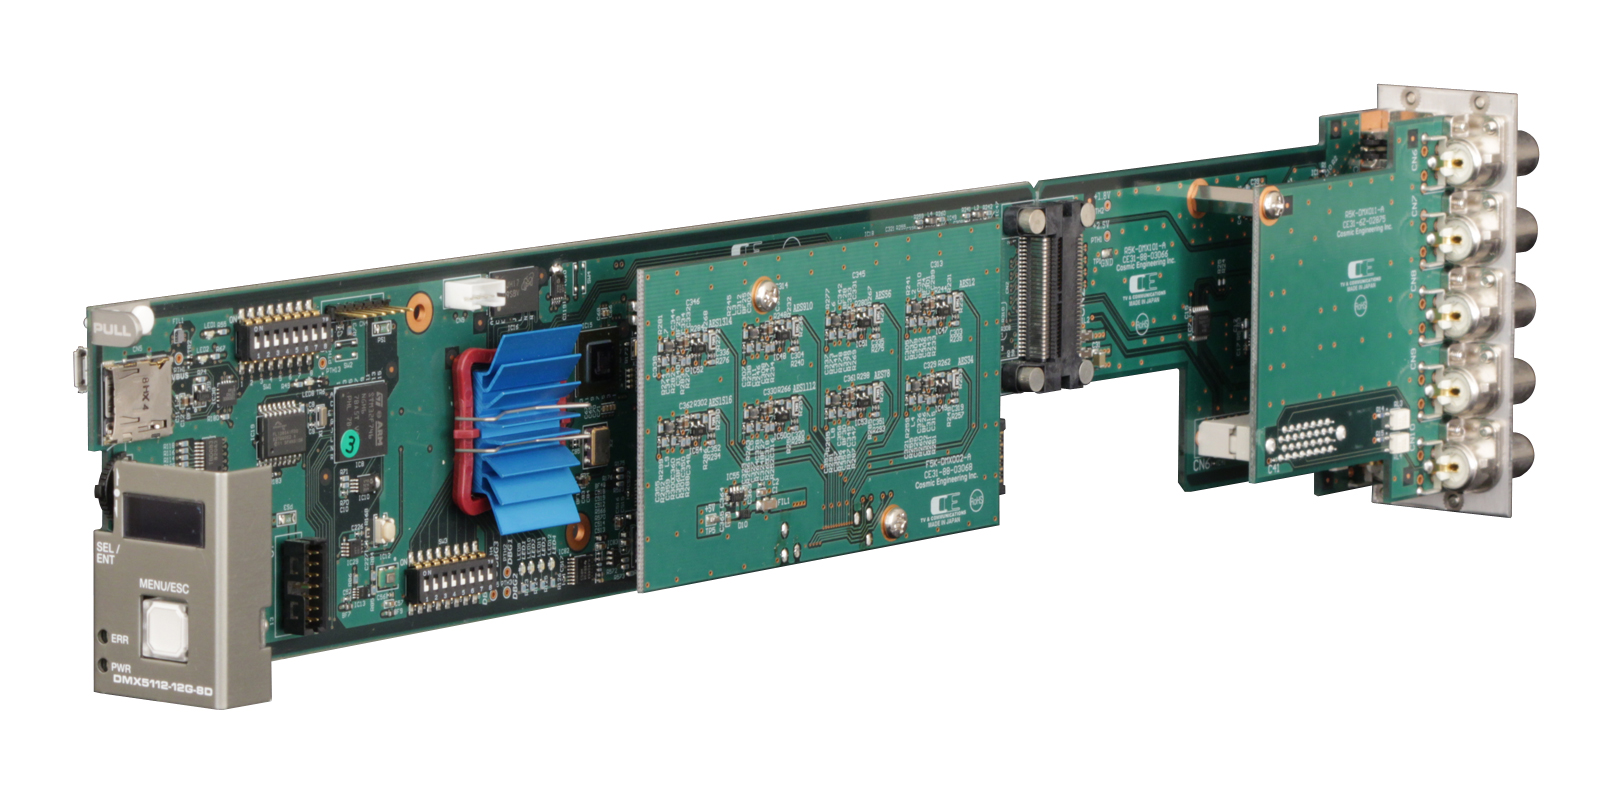 12g Sdi 対応 デジタル オーディオ 8系統 16ch デマルチプレクサ モジュール 放送業務用 映像 音声 機器の開発 製造 販売はコスミックエンジニアリング